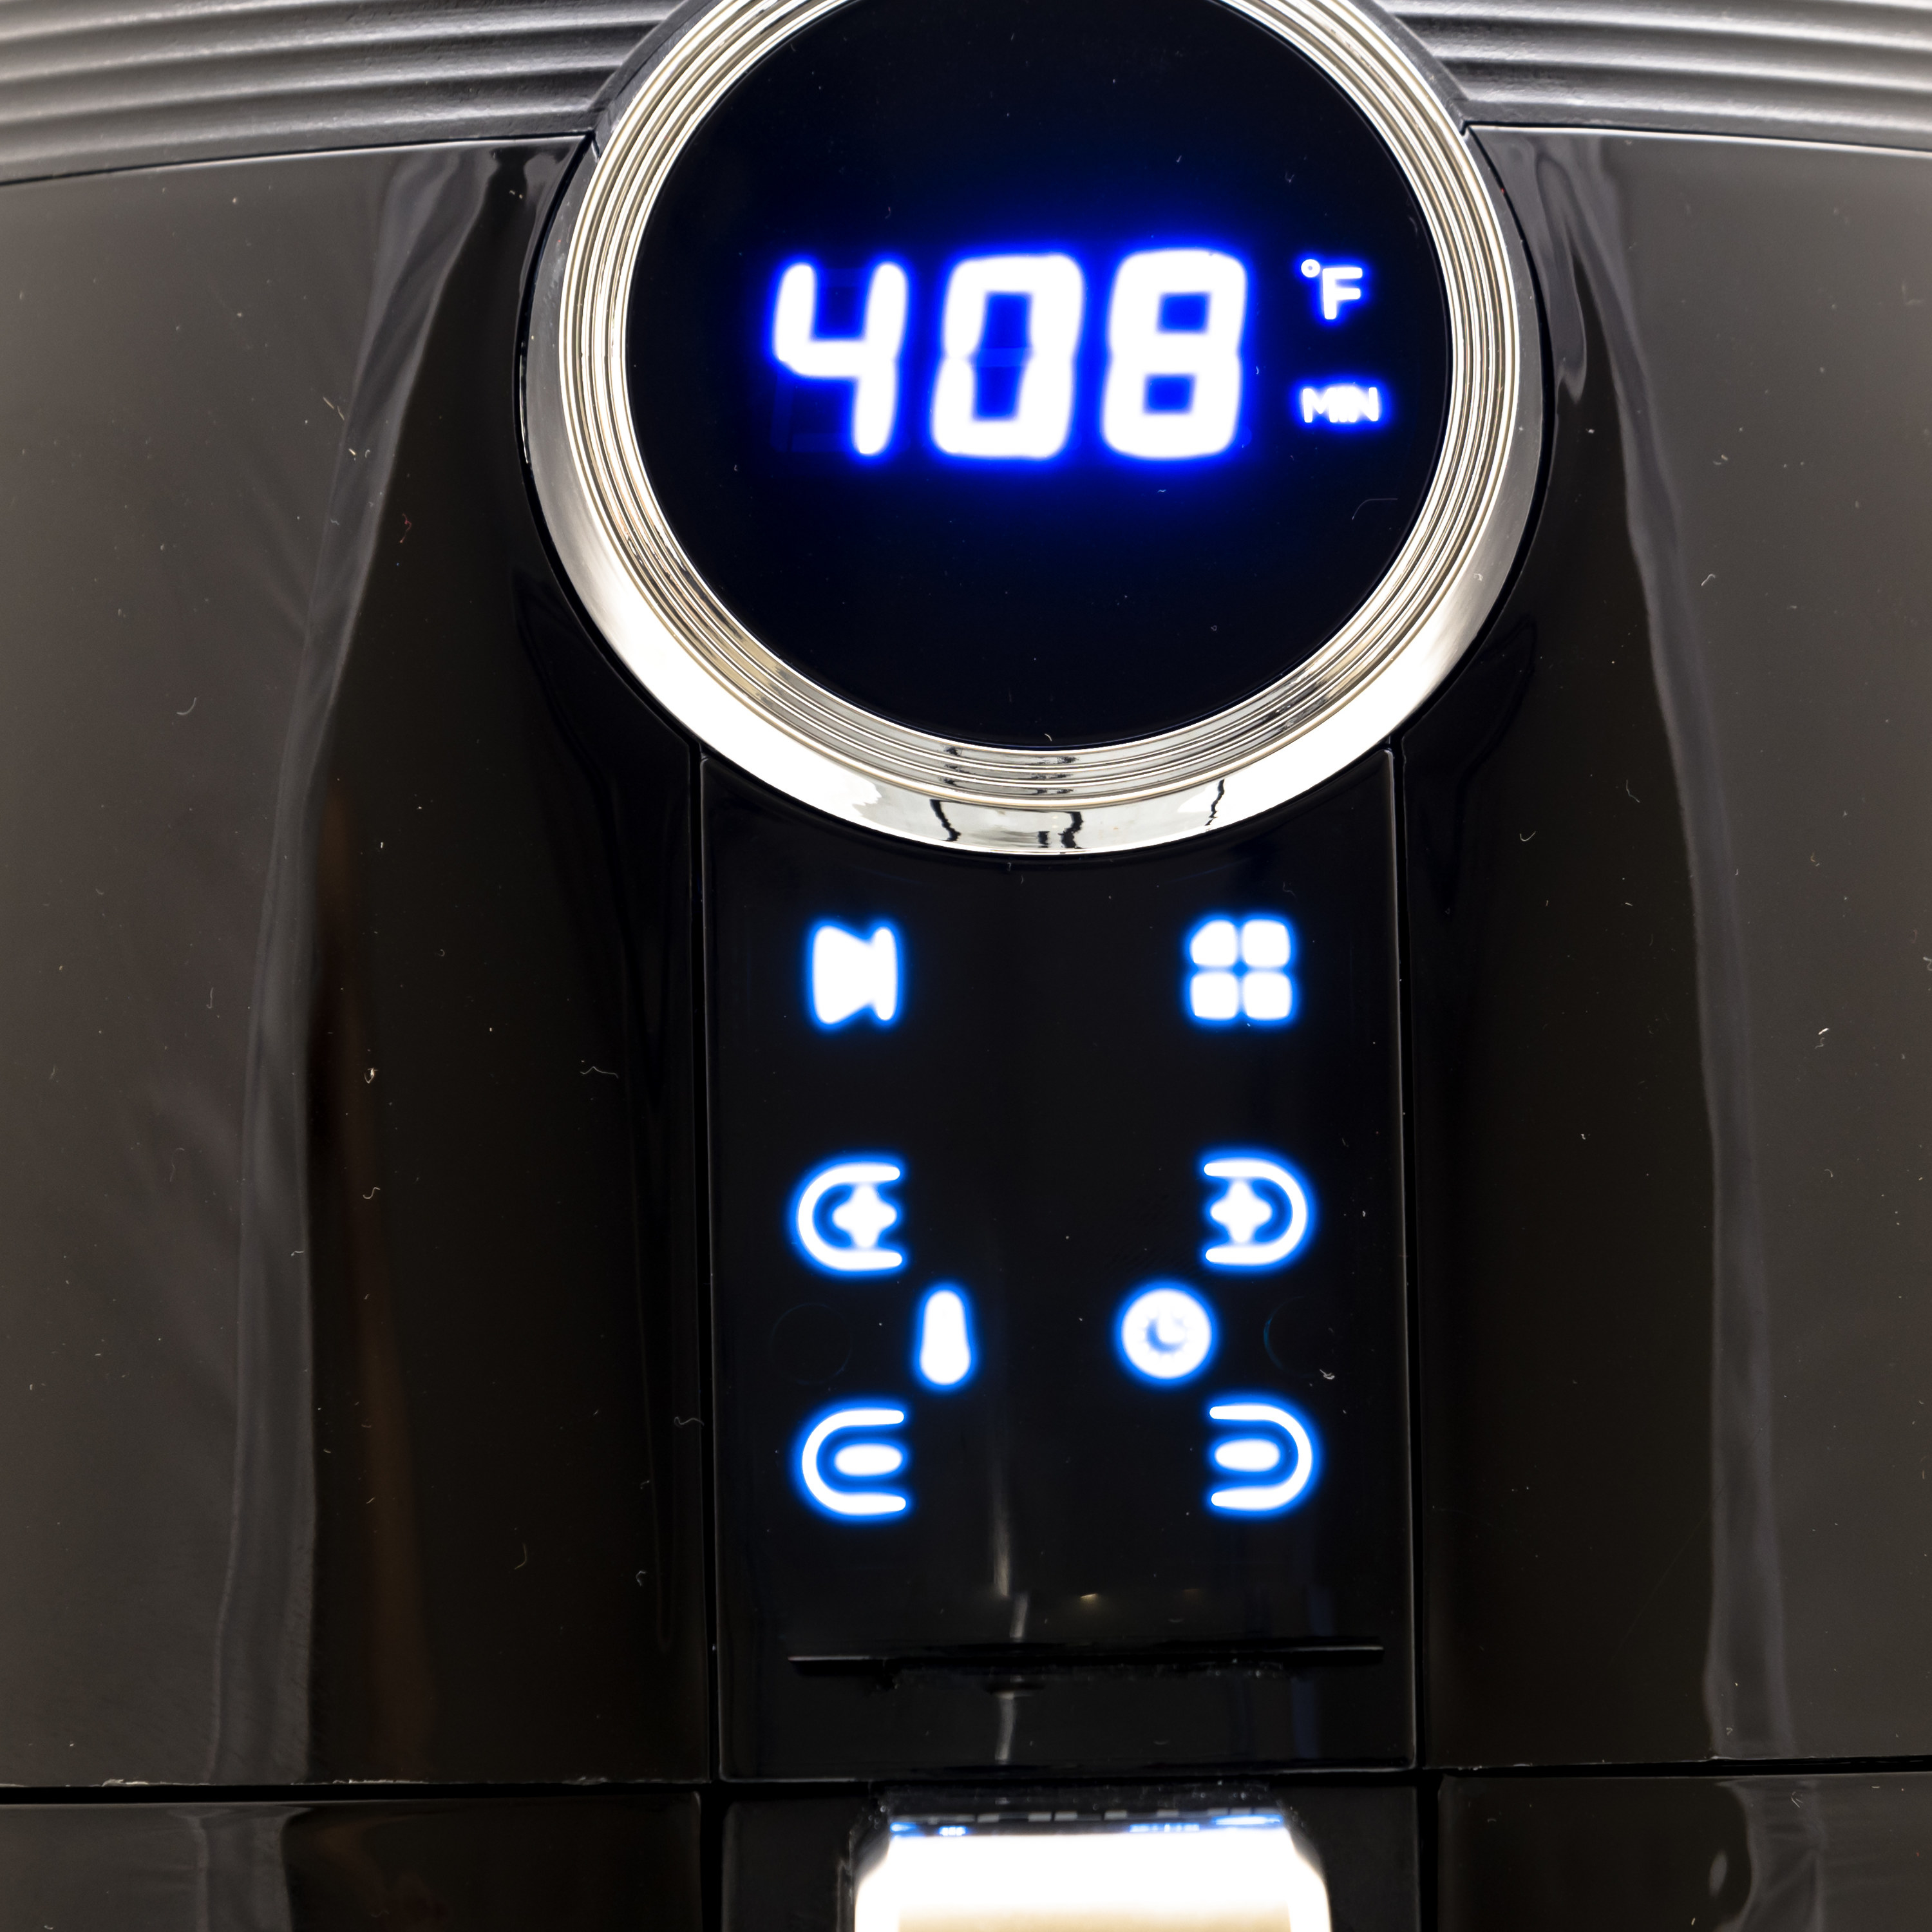 An air fryer that reads 408 degrees Fahrenheit 